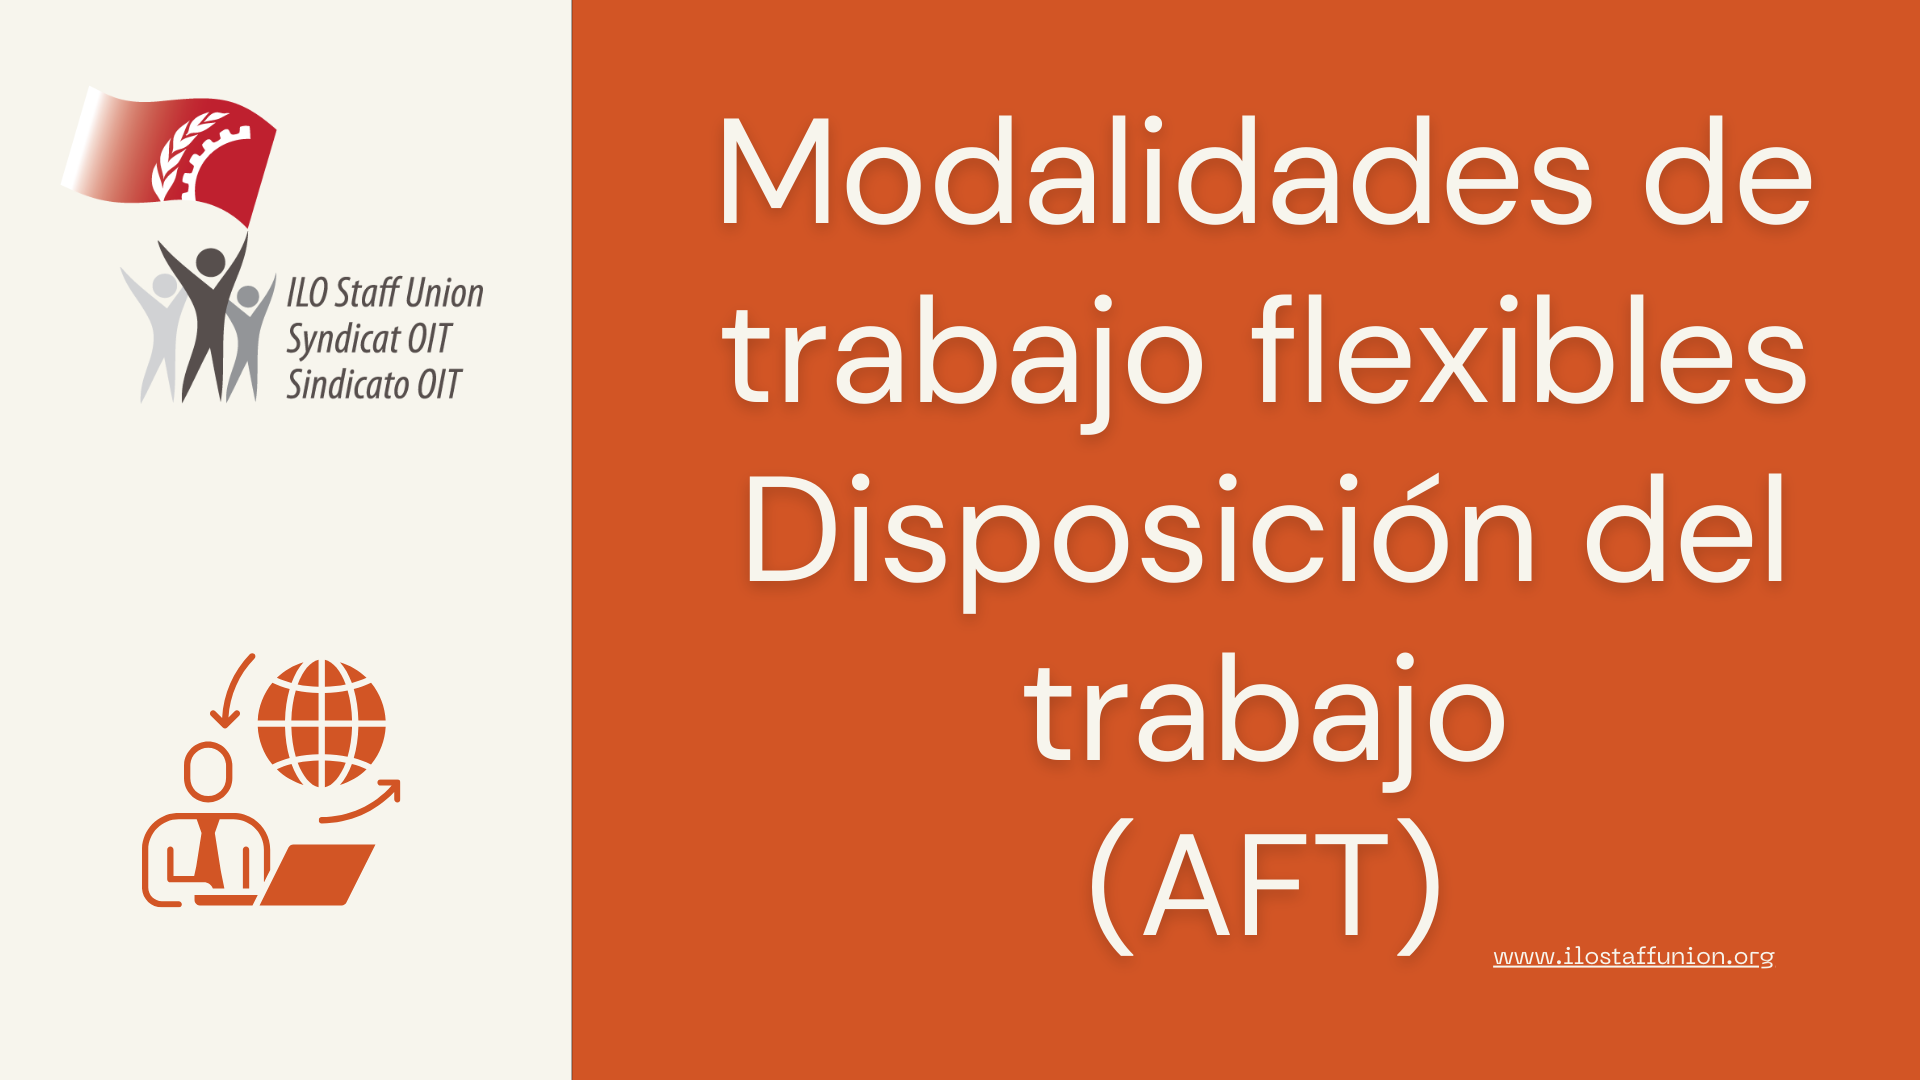 Modalidades de trabajo flexibles  Disposición del trabajo (AFT)